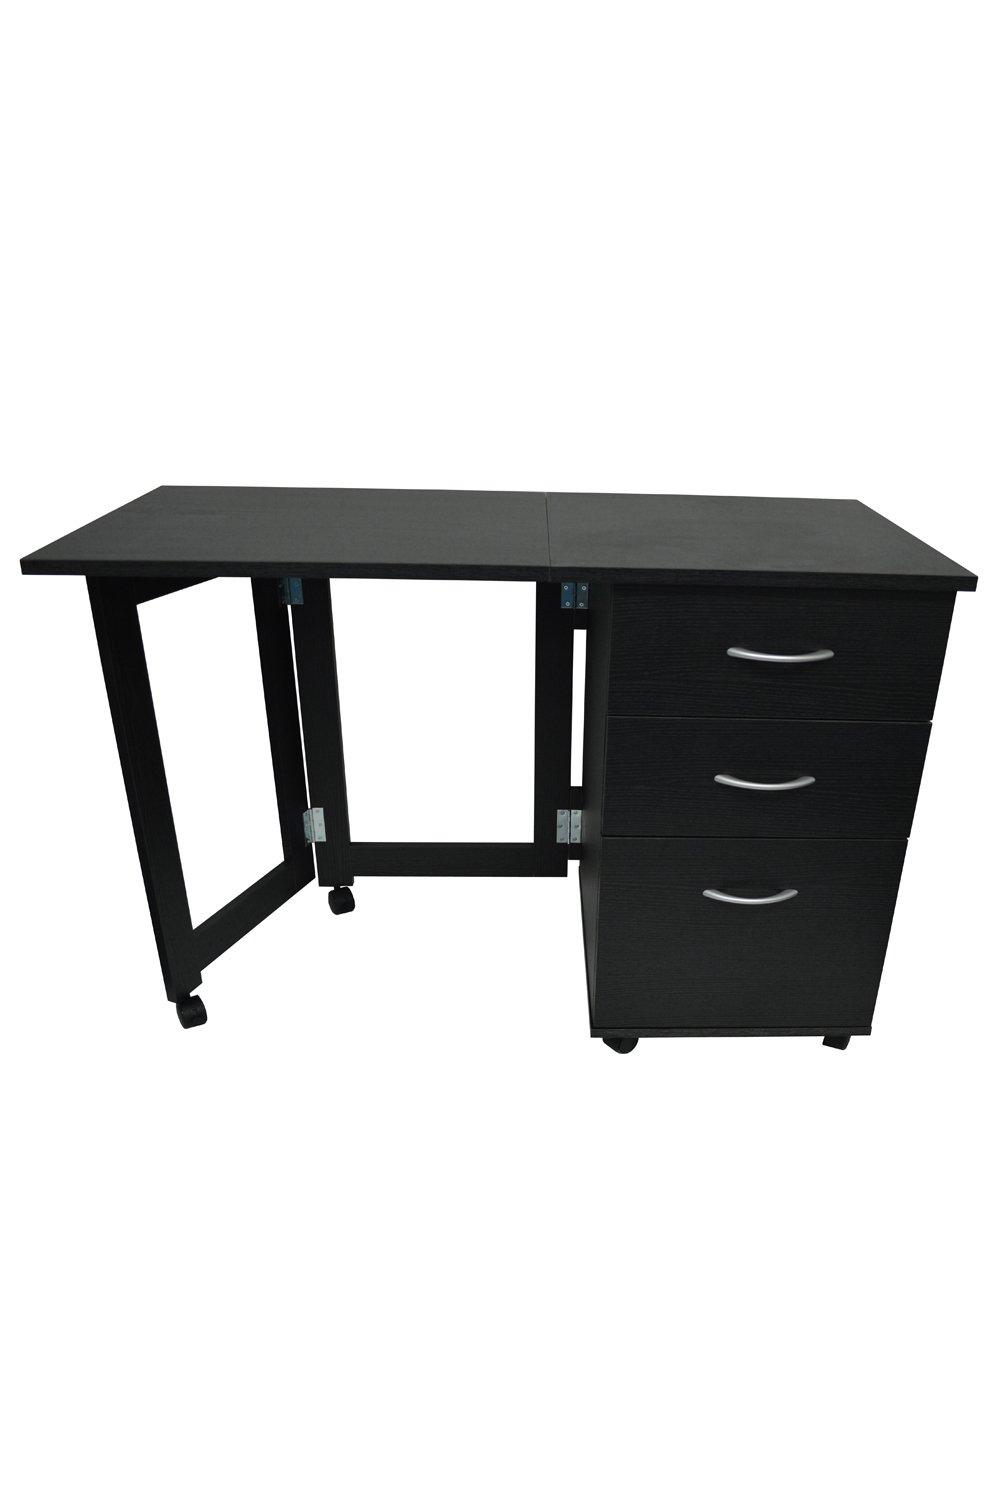 'Flipp' - 3 Drawer Folding Office Storage Filing Desk  Workstation - Black